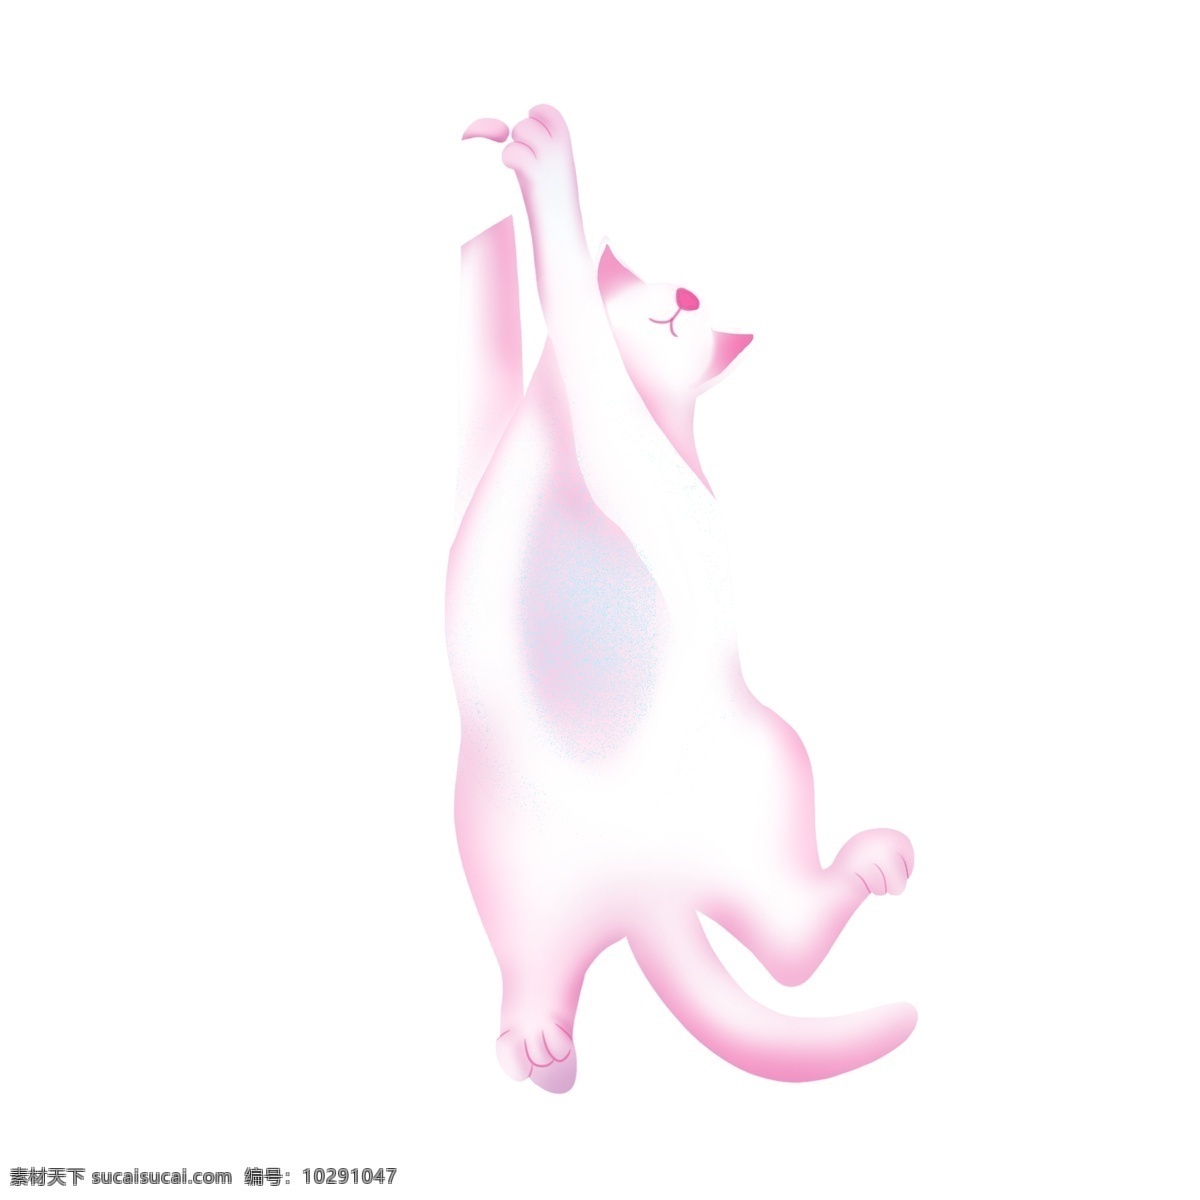 可爱 粉色 动物 猫 兔子 手绘 绘画 卡通 简约 小清新 装饰 彩色